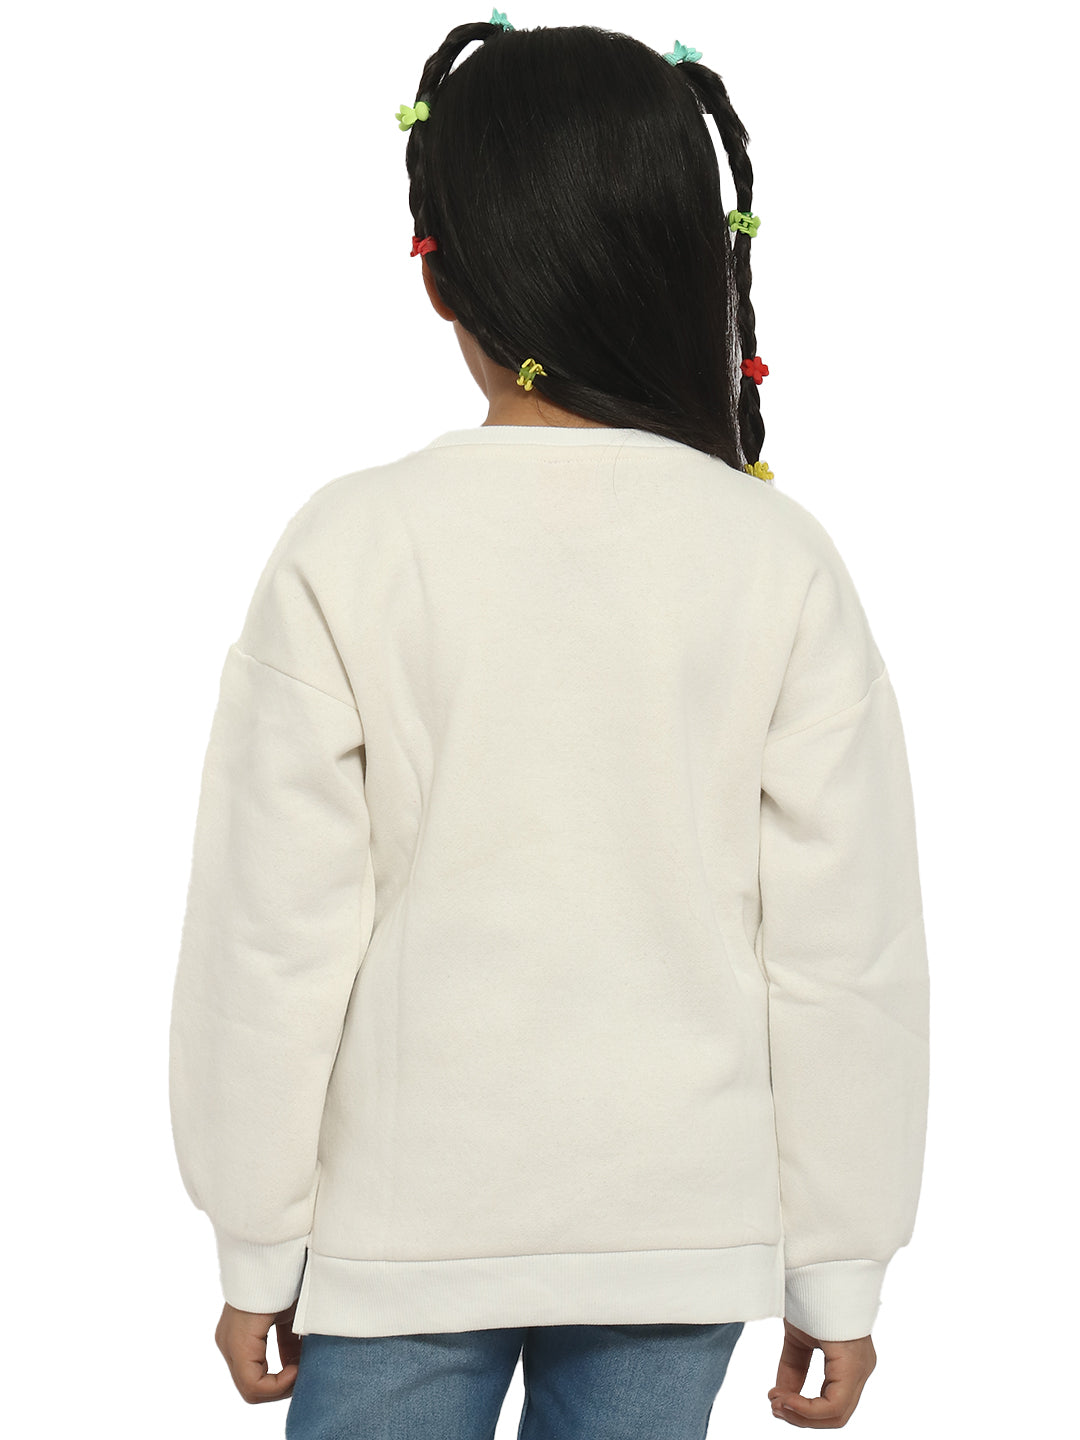 Nautinati Girls White Printed Sweatshirt